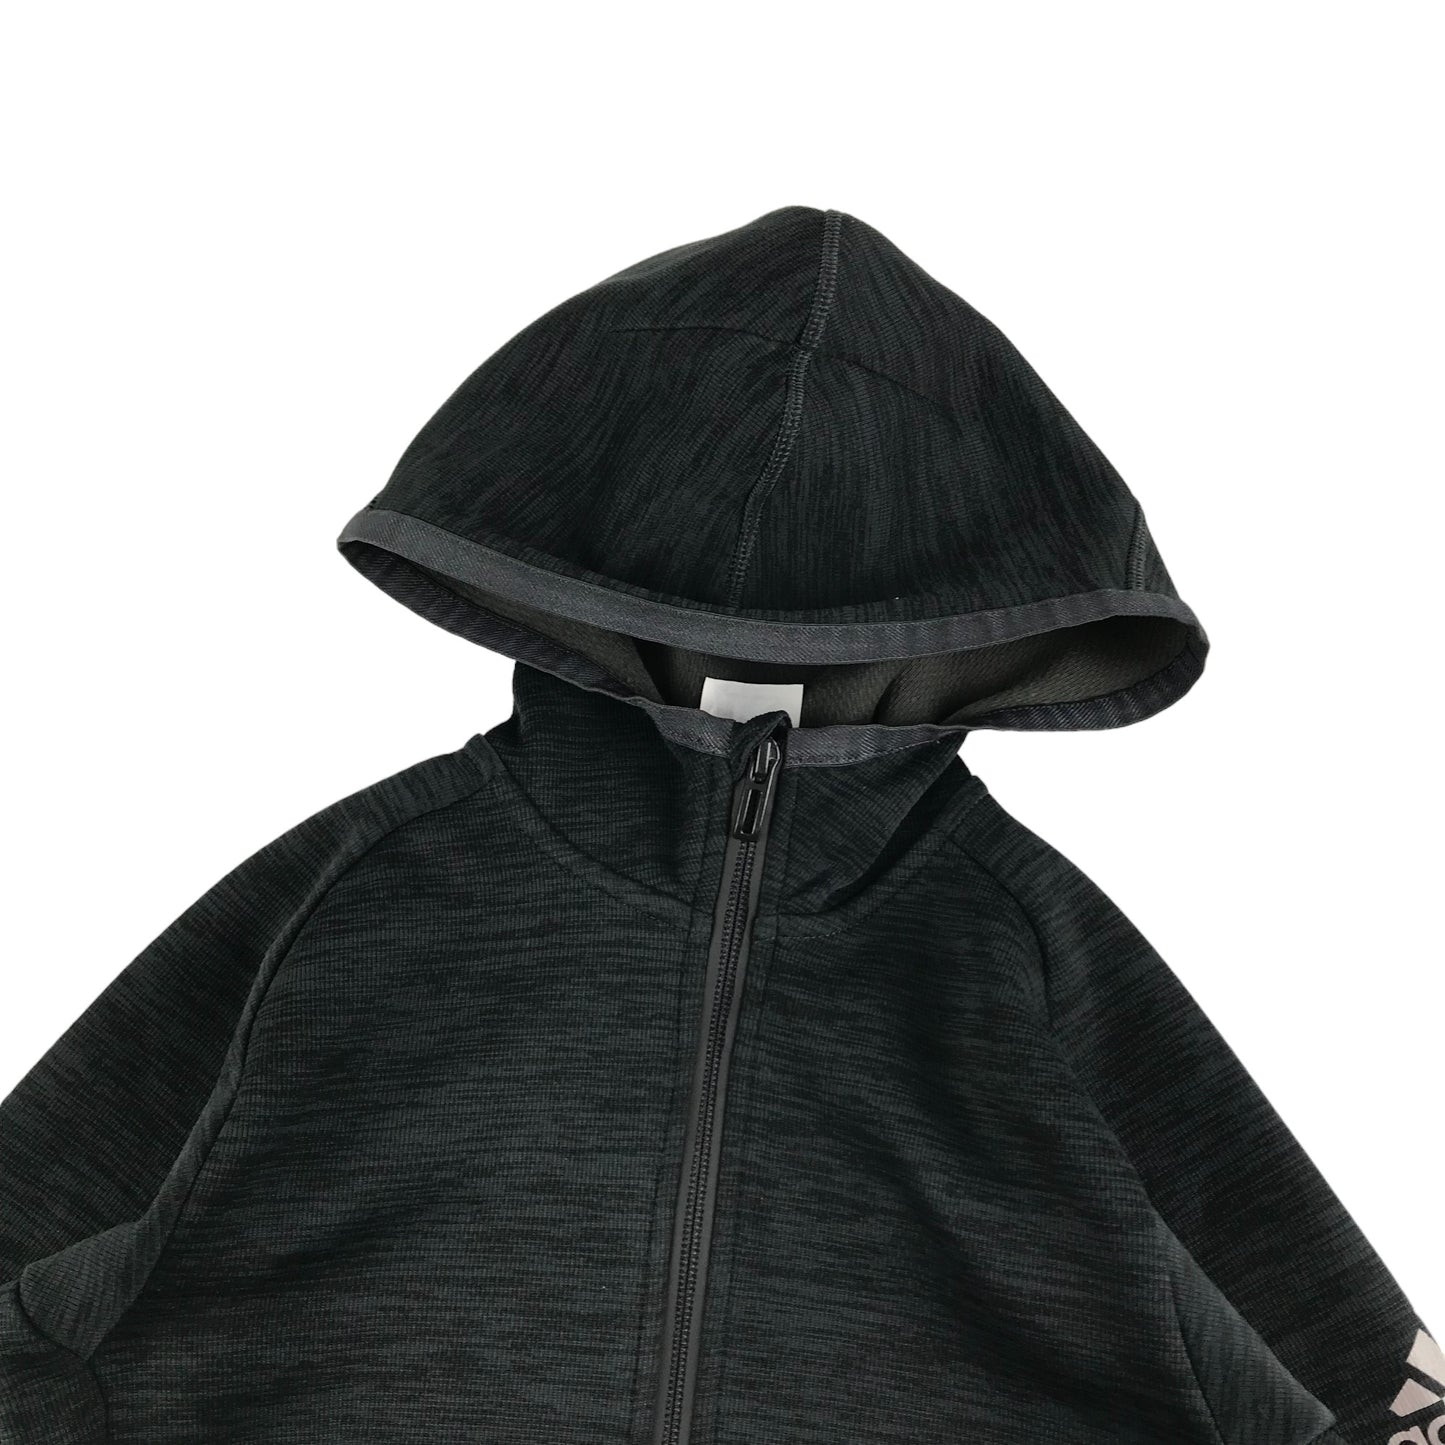 Adidas Hoodie Age 7 Grey Sporty Full zipper